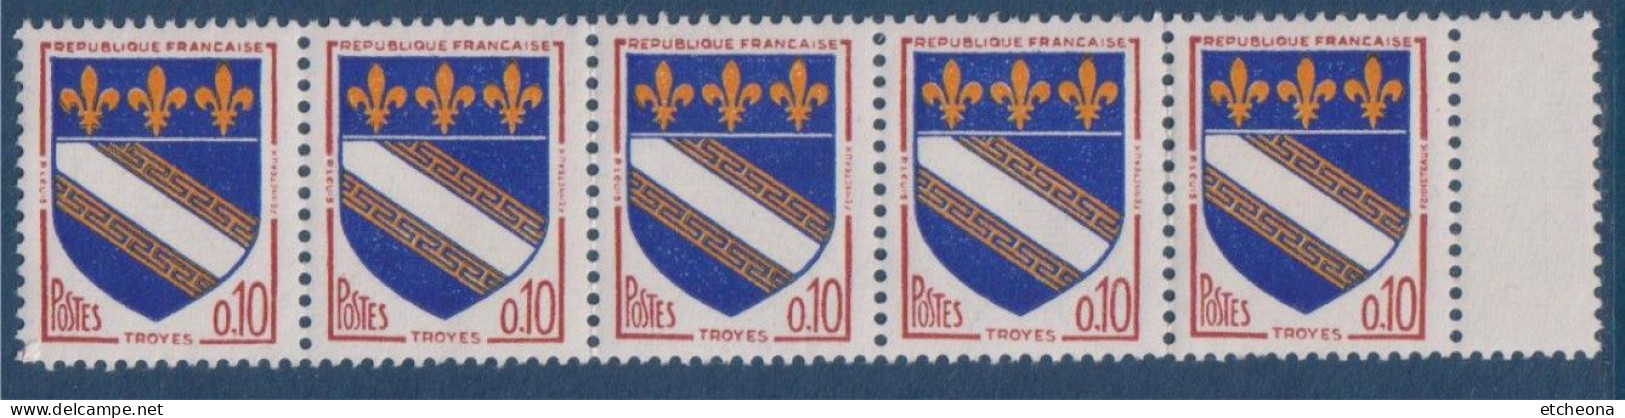 Troyes Armoiries De Villes IV N°1353 Bande De 5 Timbres Neufs Avec Pont De Feuille à Droite - 1941-66 Armoiries Et Blasons